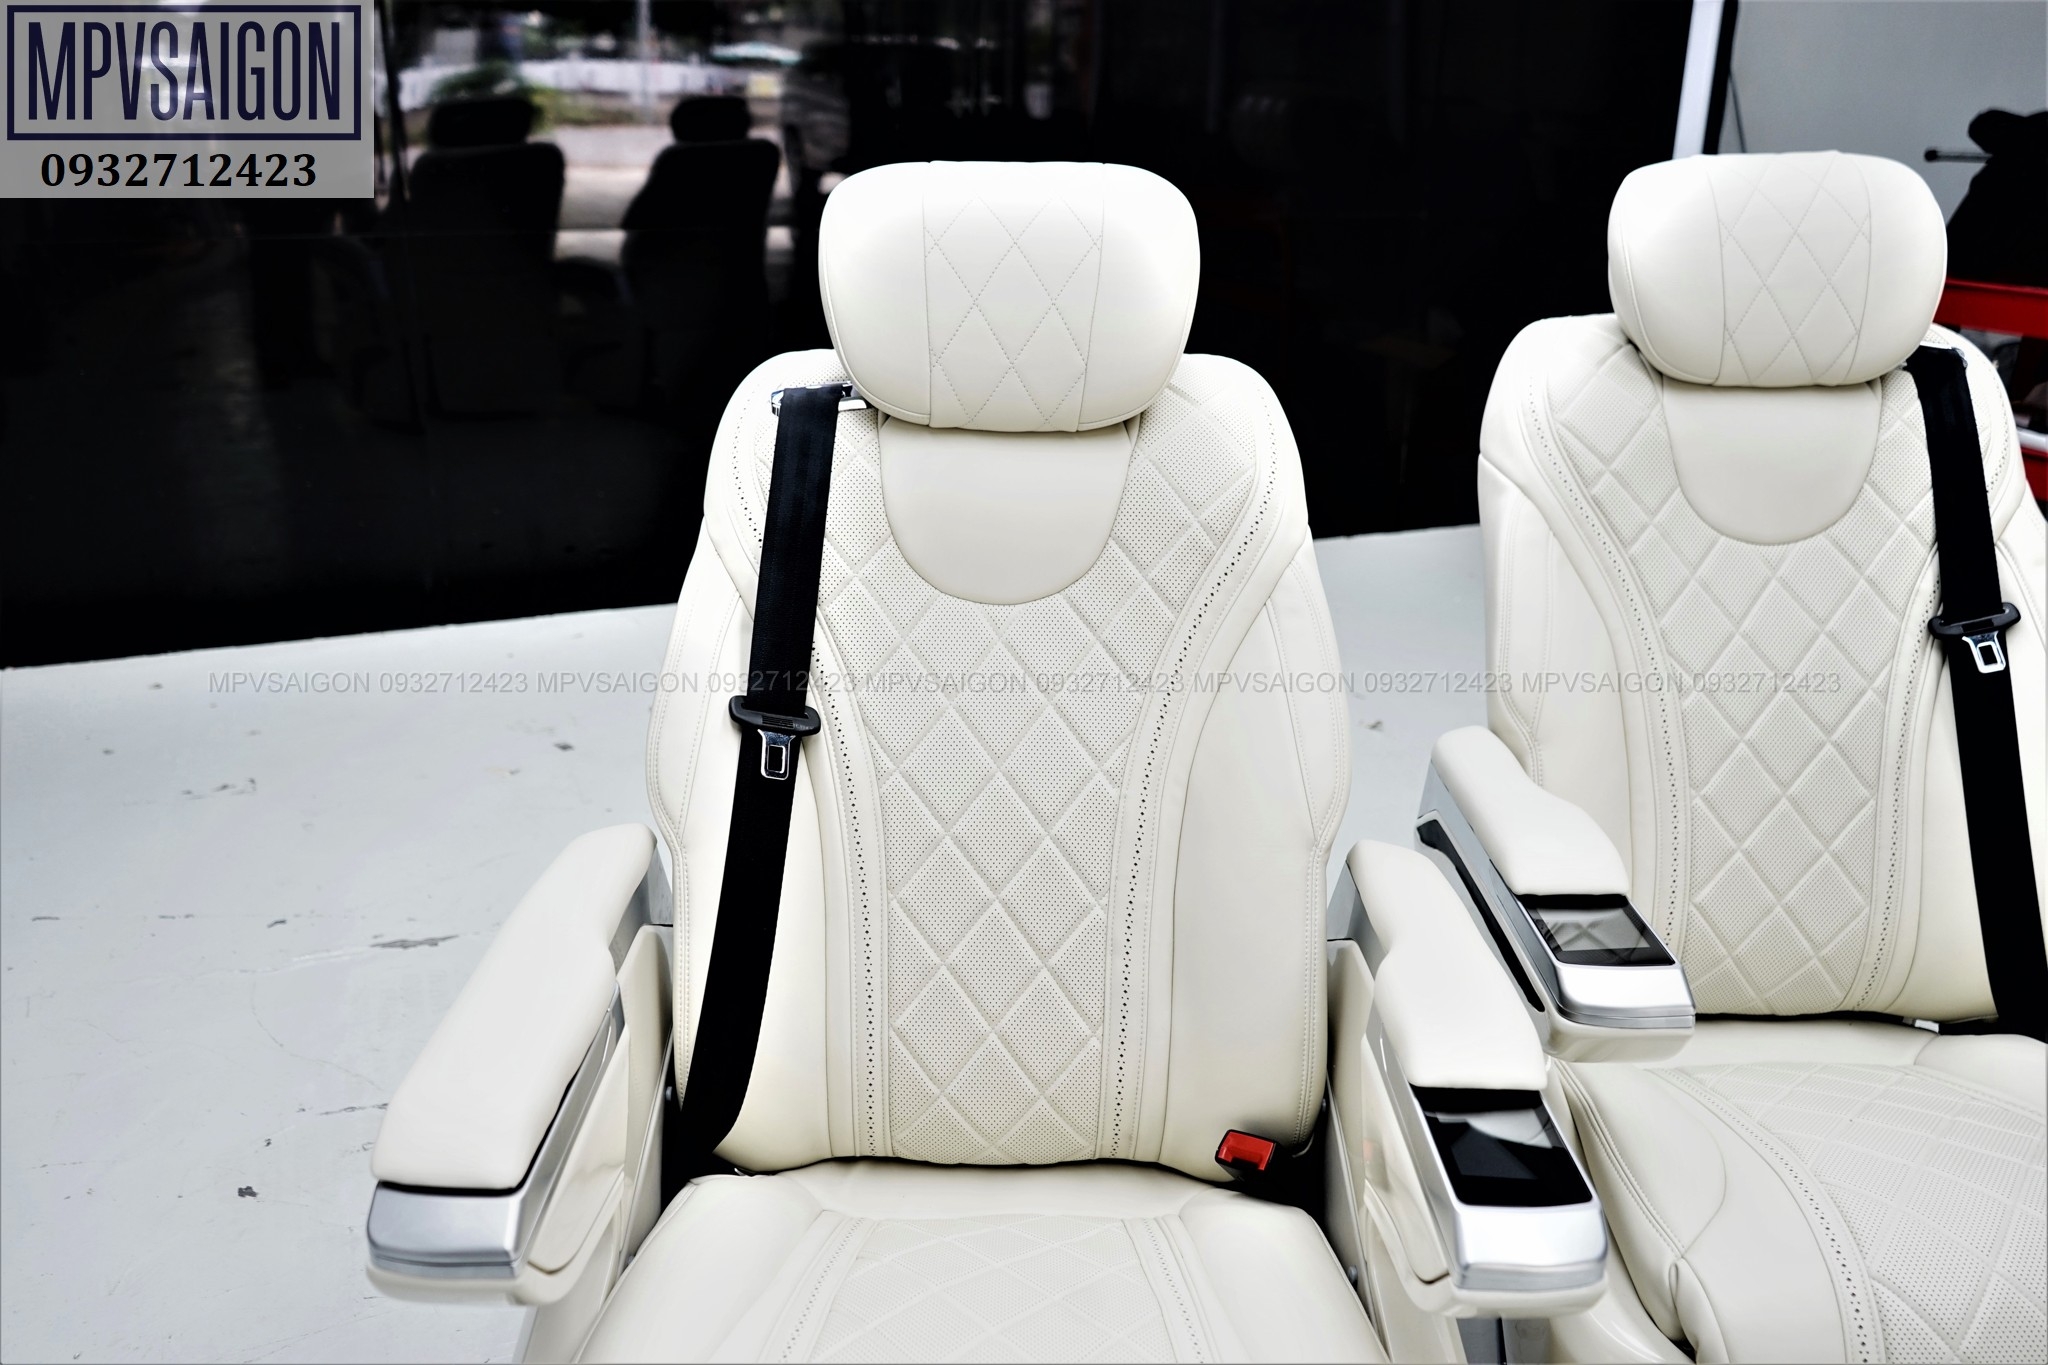 Ghế limousine trắng siêu sang cho các dòng MPV